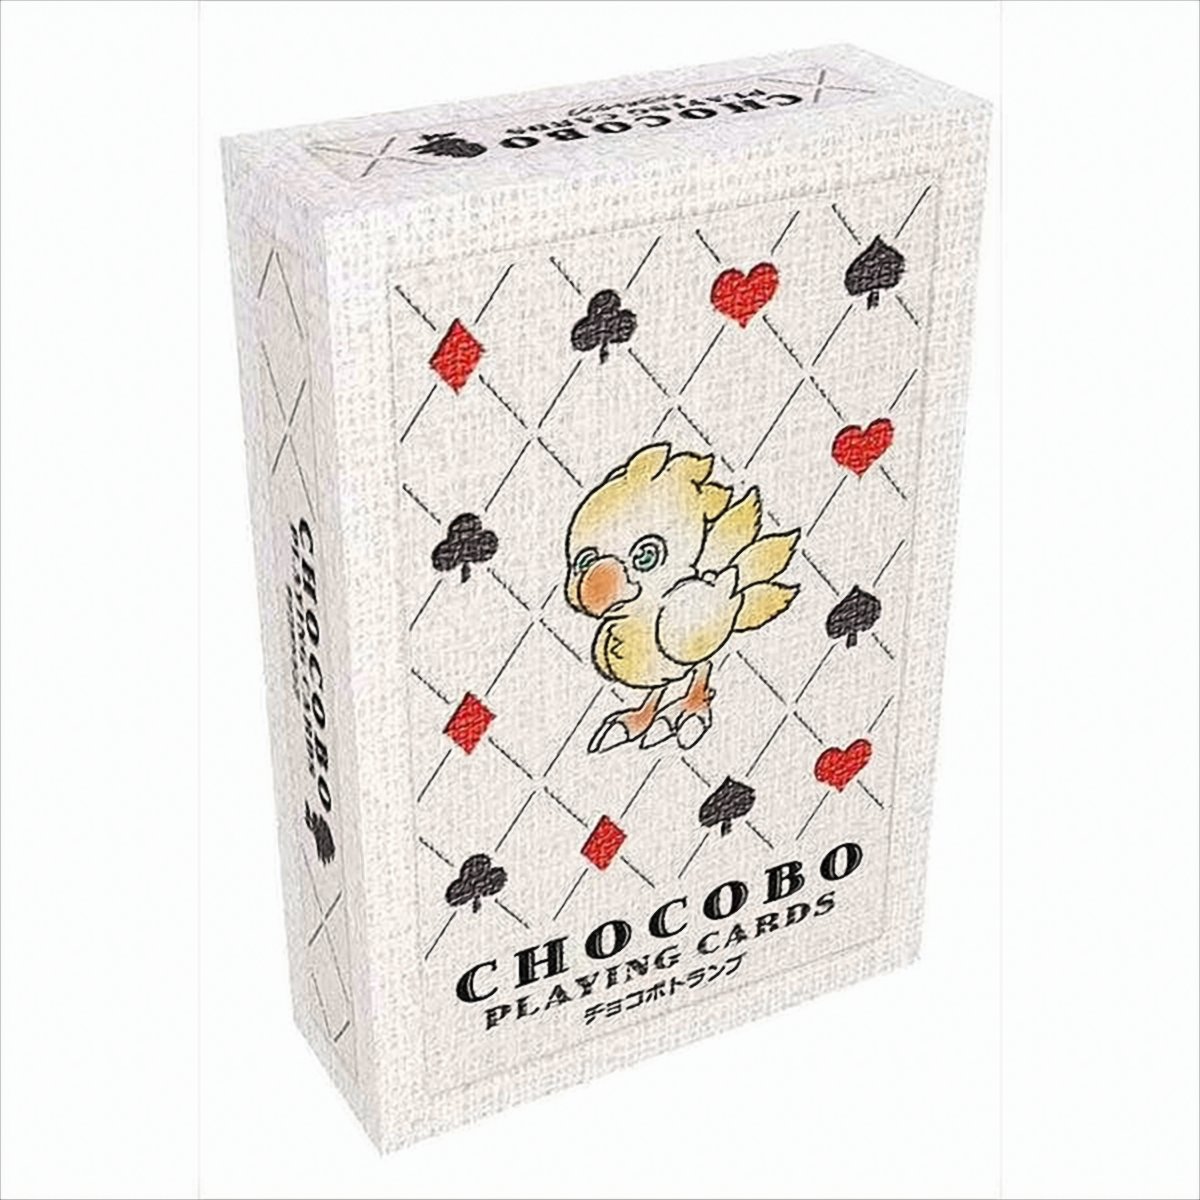 Chocobo Spielkarten von Square Enix